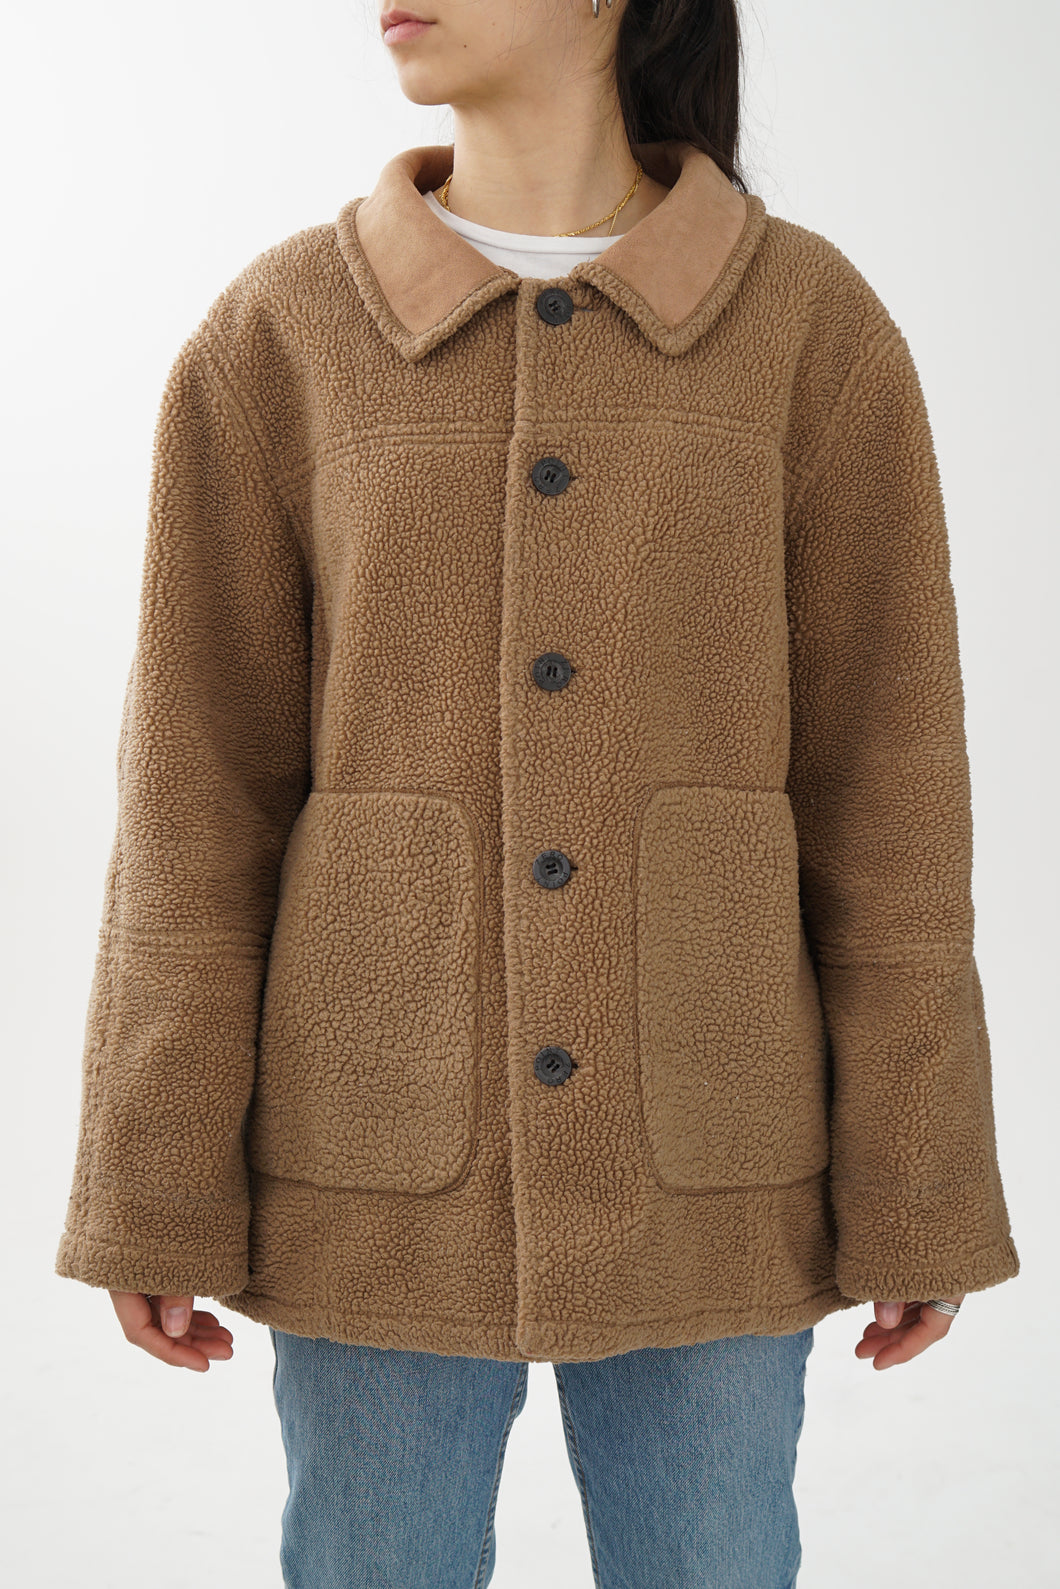 Manteau léger réversible vintage brun mouton et suède pour femme taille S-M